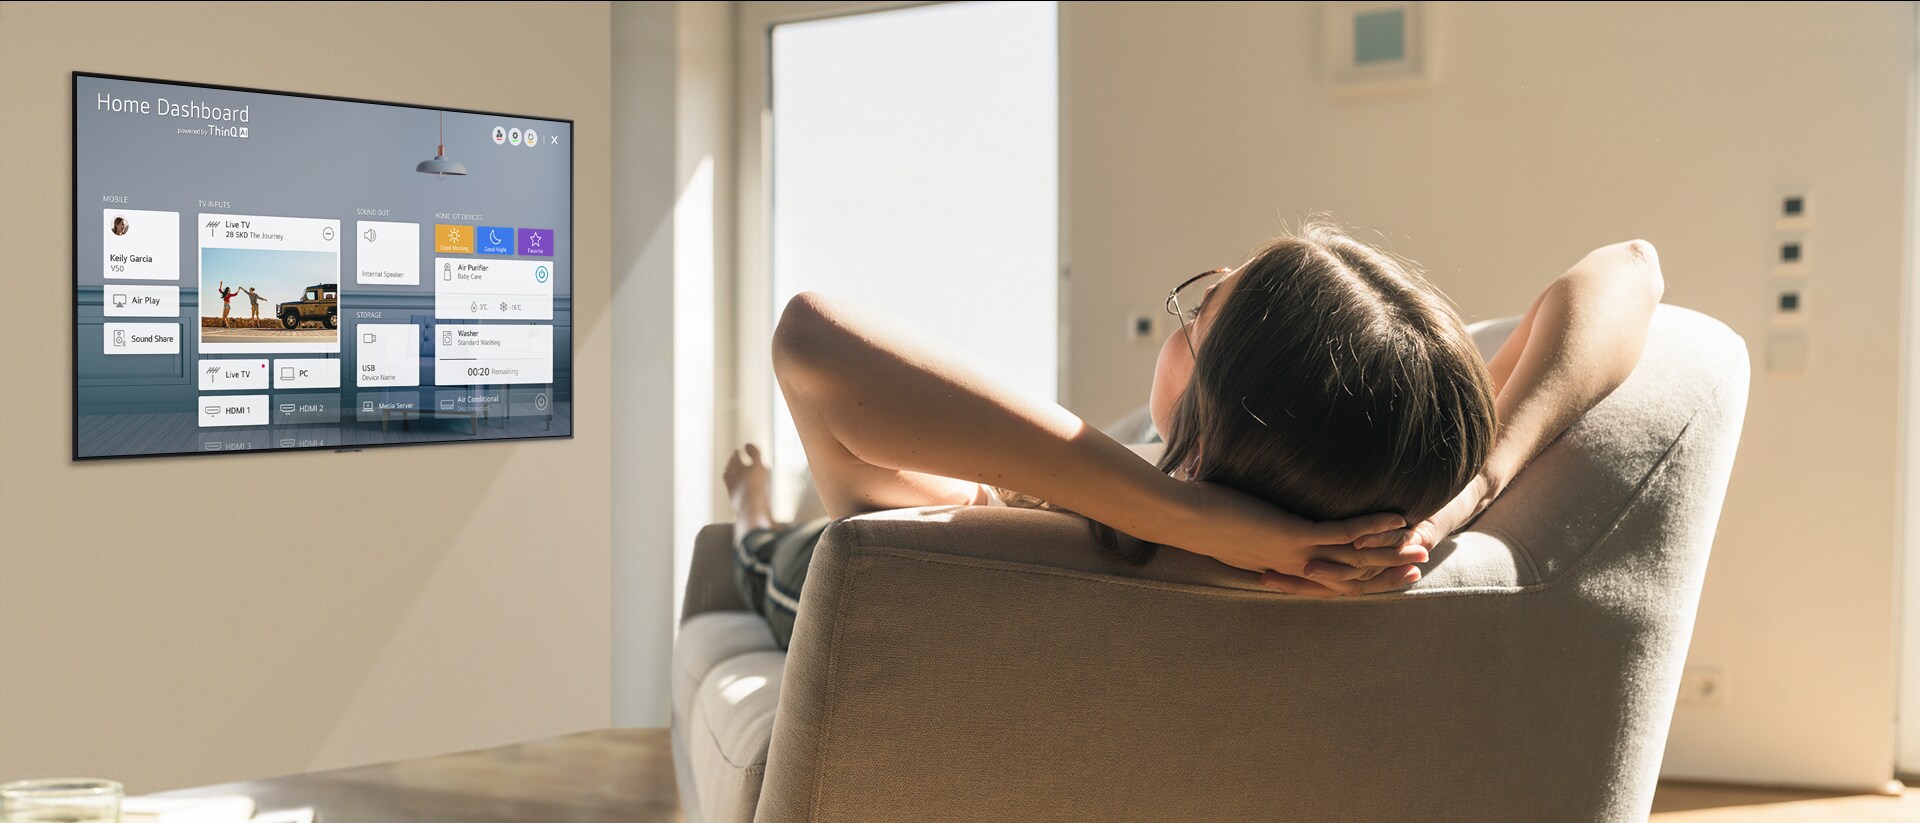 En kvinne ligger på en sofa mens hun ber TV-en om å senke temperaturen med startinstrumentpanelet på TV-skjermen